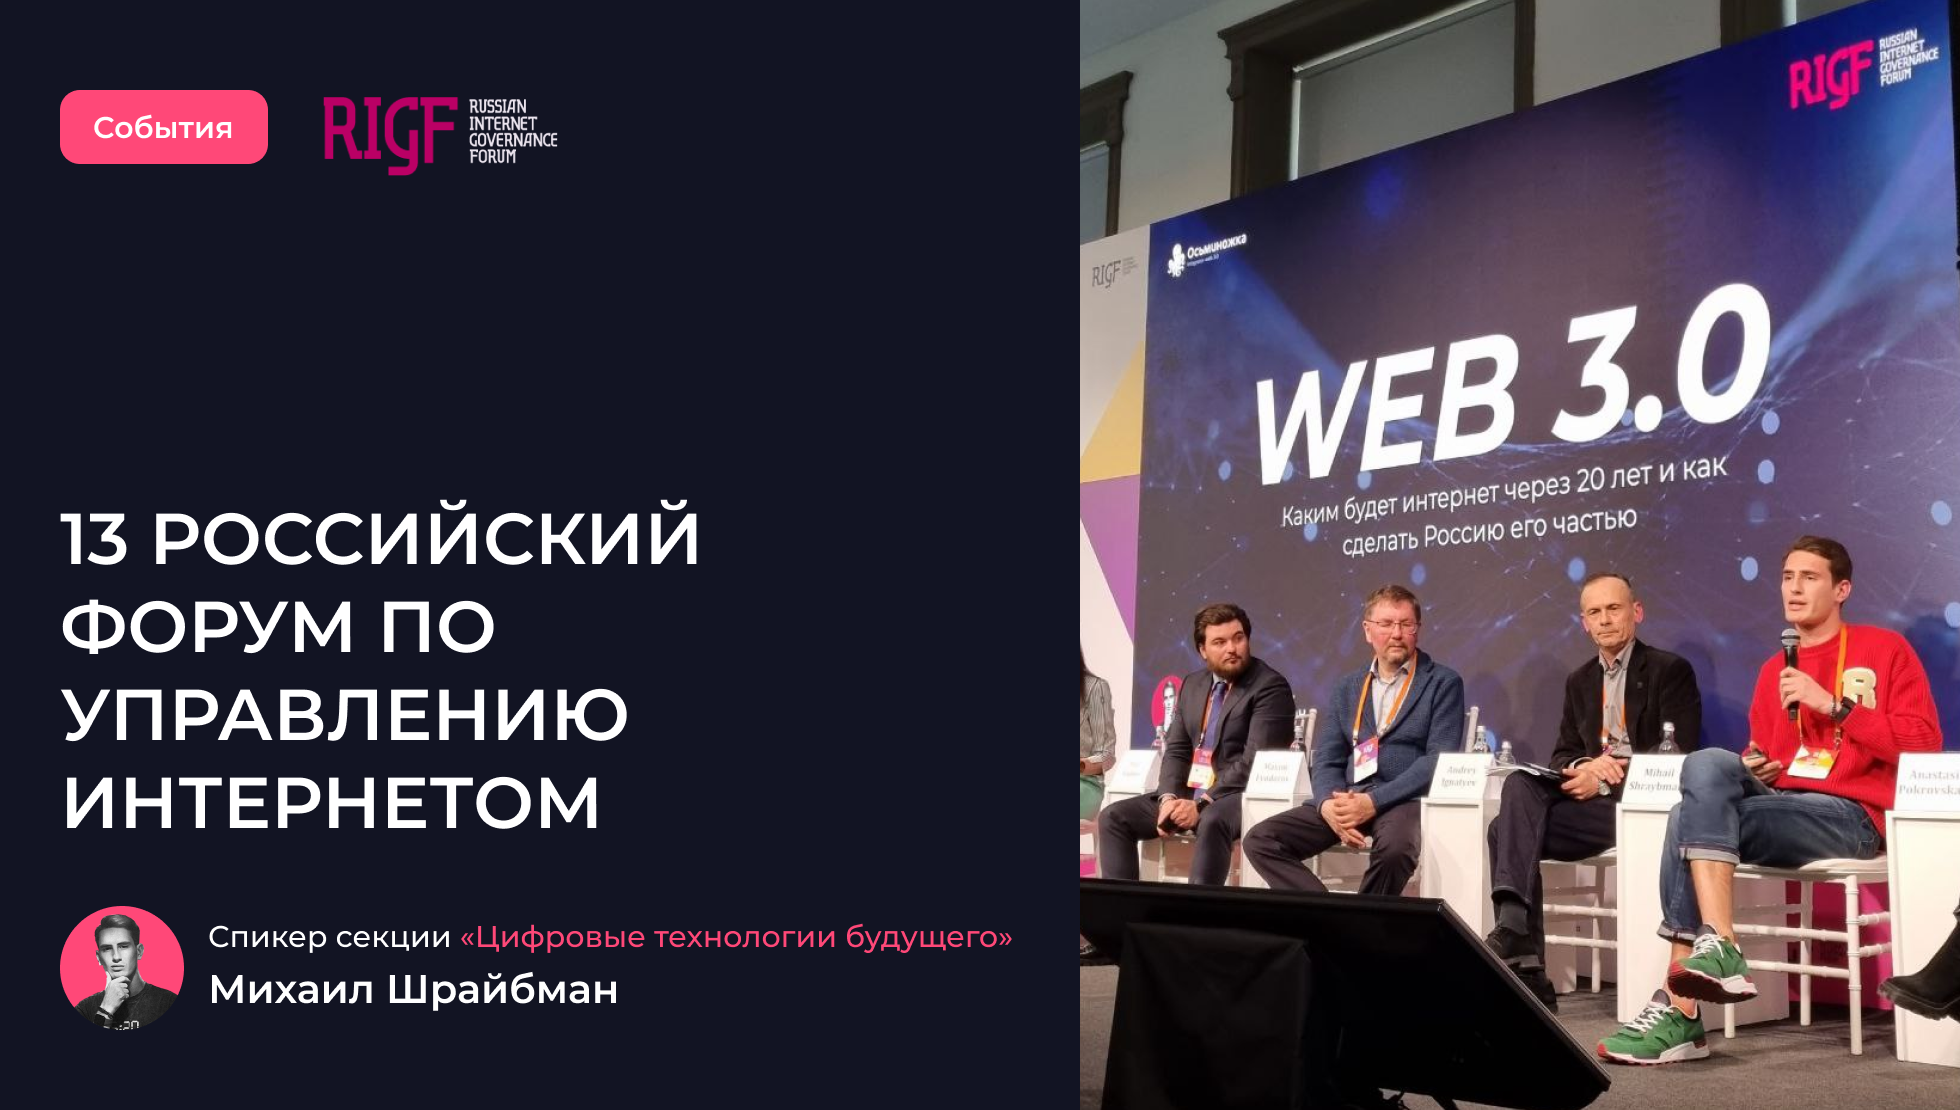 Web 3.0: каким будет интернет через 20 лет и как сделать Россию его частью